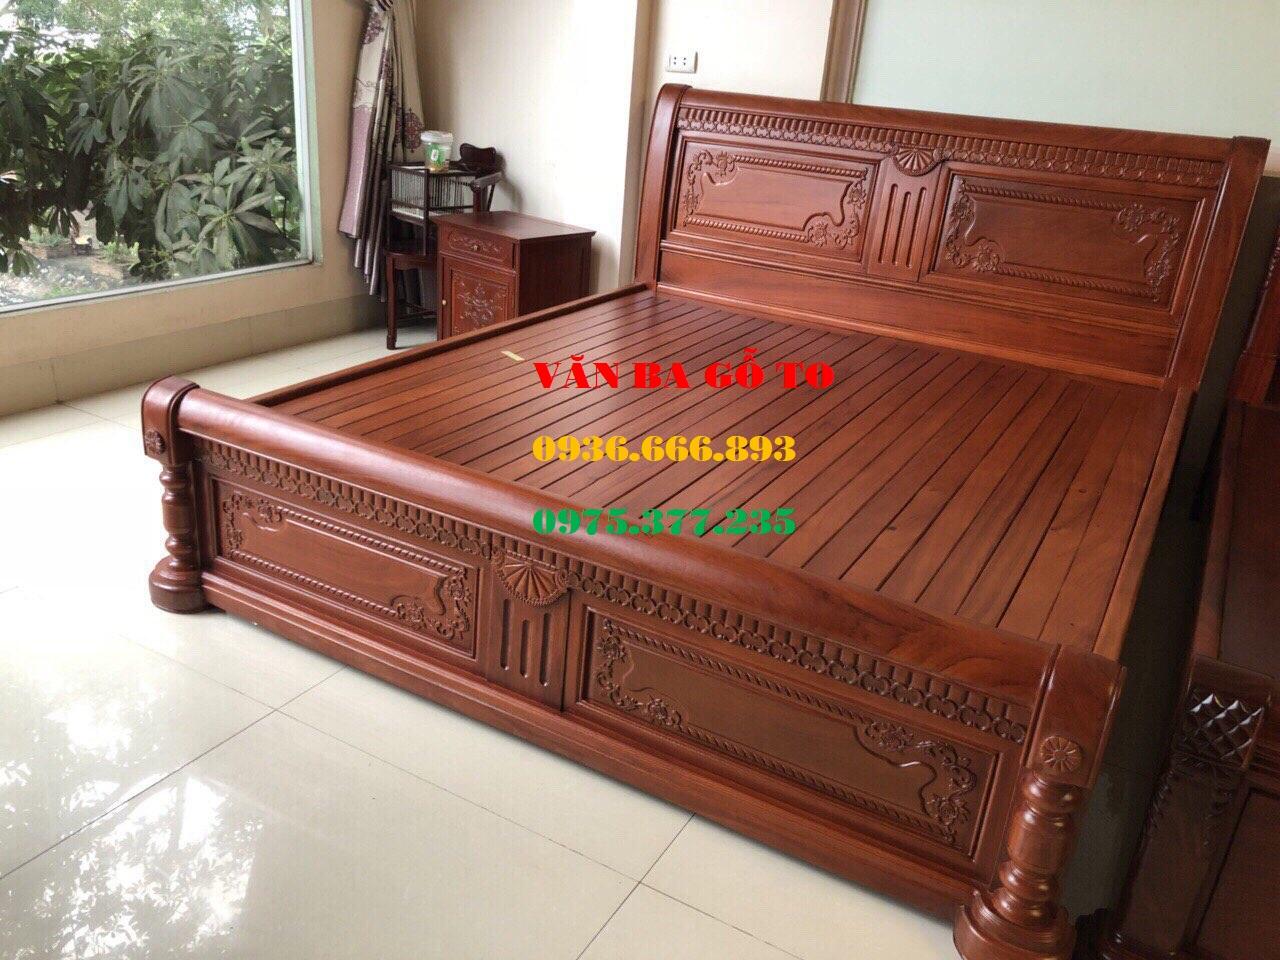 GN012: Giường GN012 - một sản phẩm chất lượng cao được ưa chuộng bởi tính tiện lợi và đa dạng trong thiết kế. Với nhiều lựa chọn về màu sắc và kiểu dáng, bạn có thể dễ dàng lựa chọn cho mình một chiếc giường phù hợp với sở thích và không gian phòng ngủ.